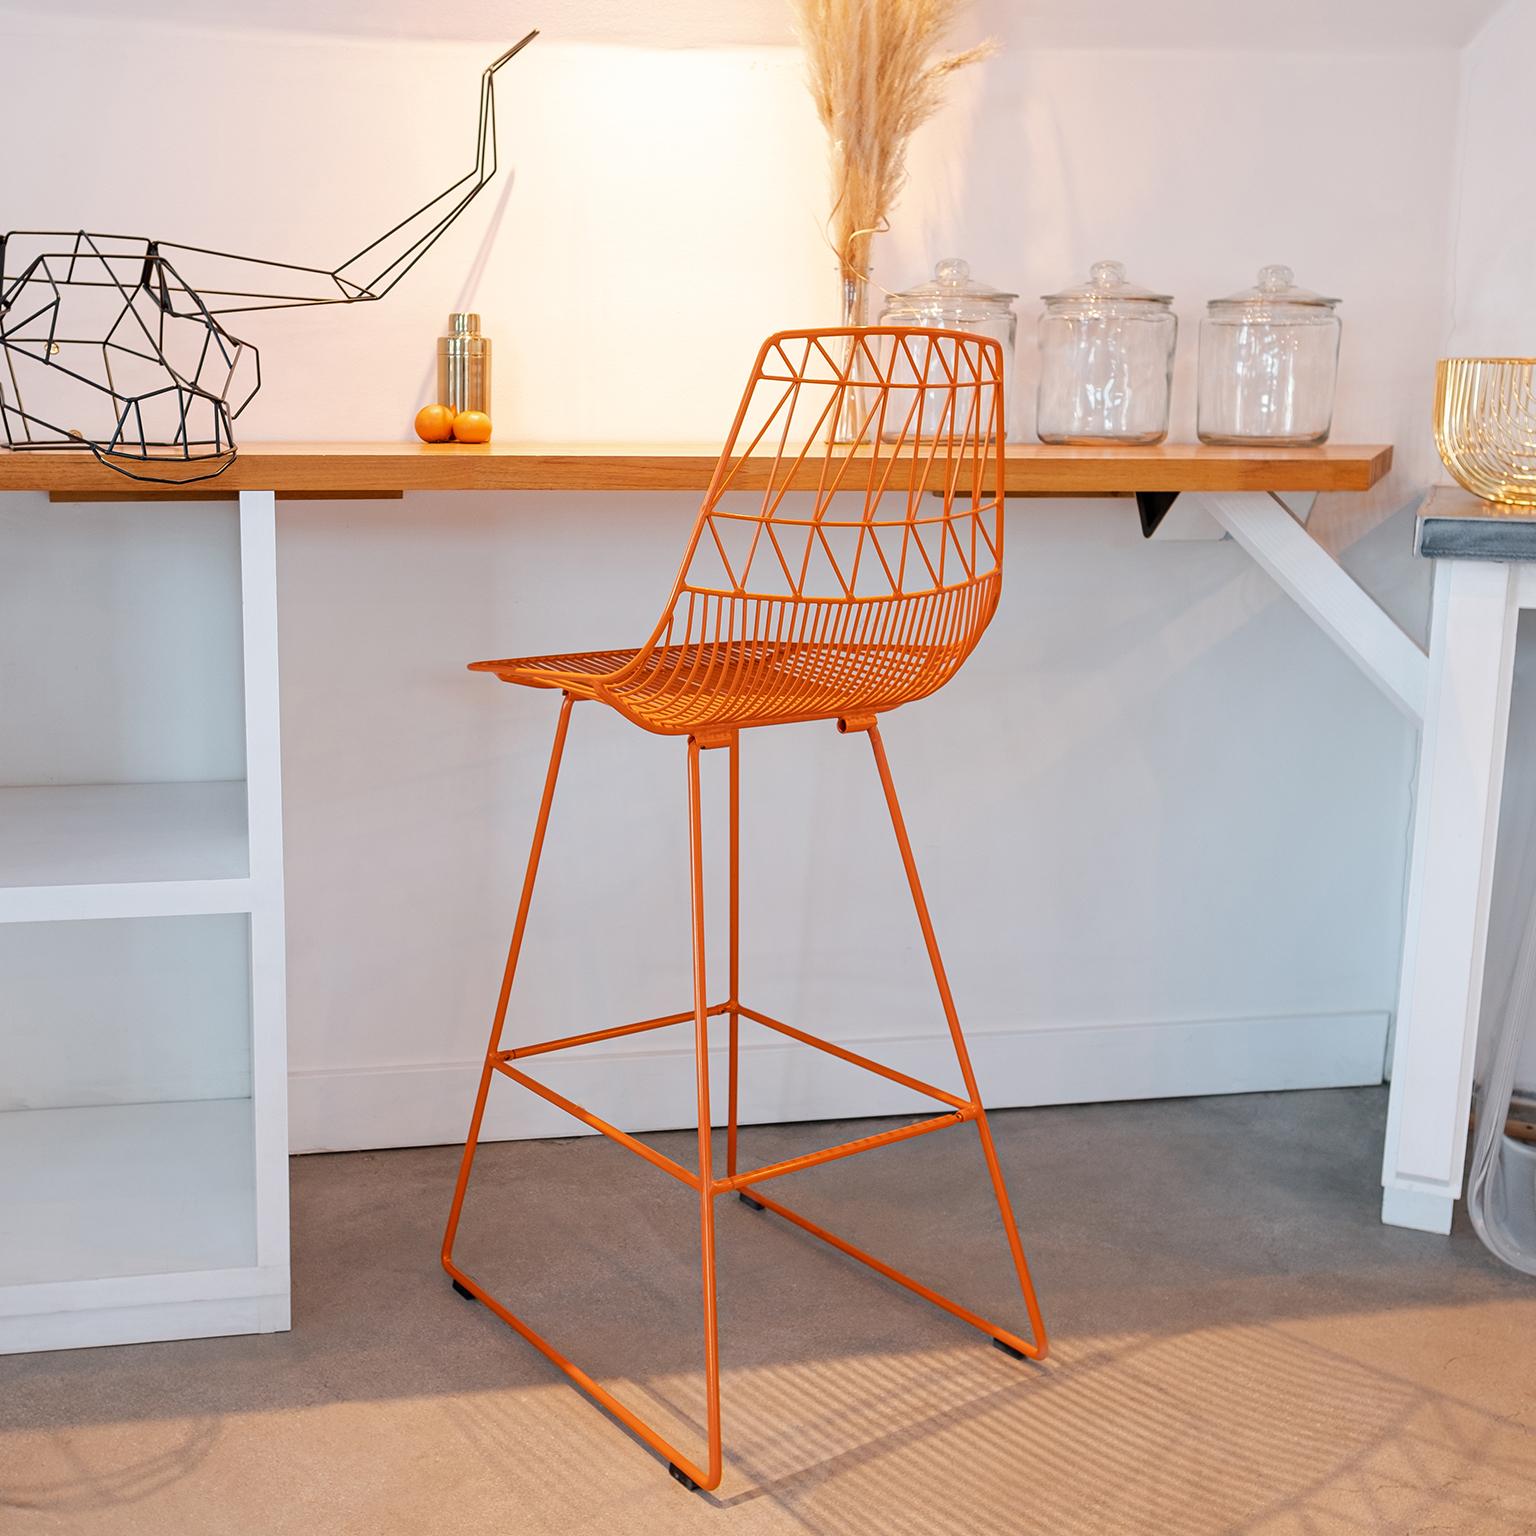 Galvanized Mid-Century Modern, Minimalist Wire Bar Stool, in Orange by Bend Goods